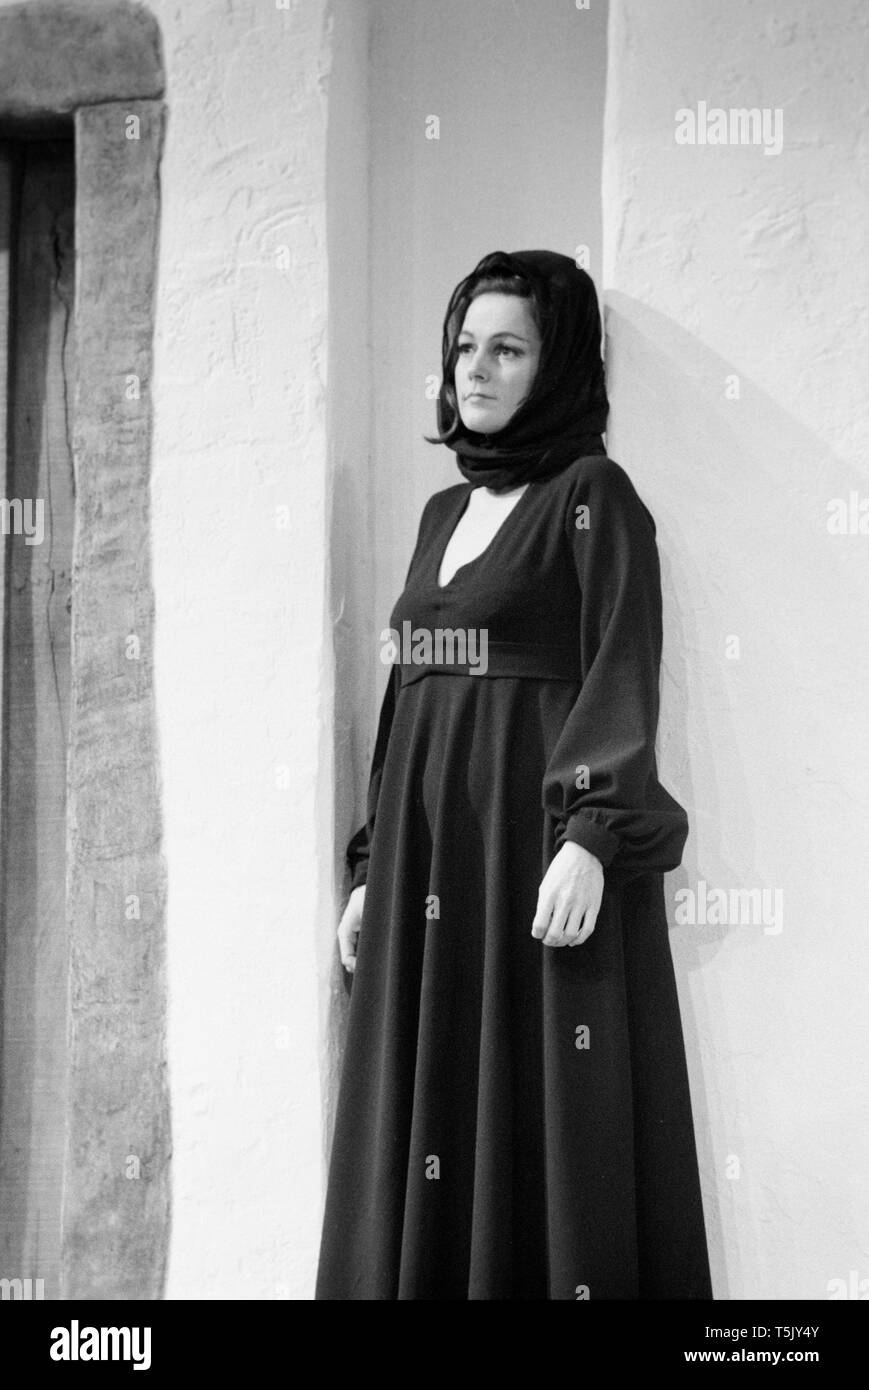 Englische Schauspielerin Angela Richards, auf der Bühne während der Proben für die play Zorba des Greenwich Theatre, London, im November 1973. Sie spielte die Rolle der Witwe. Stockfoto